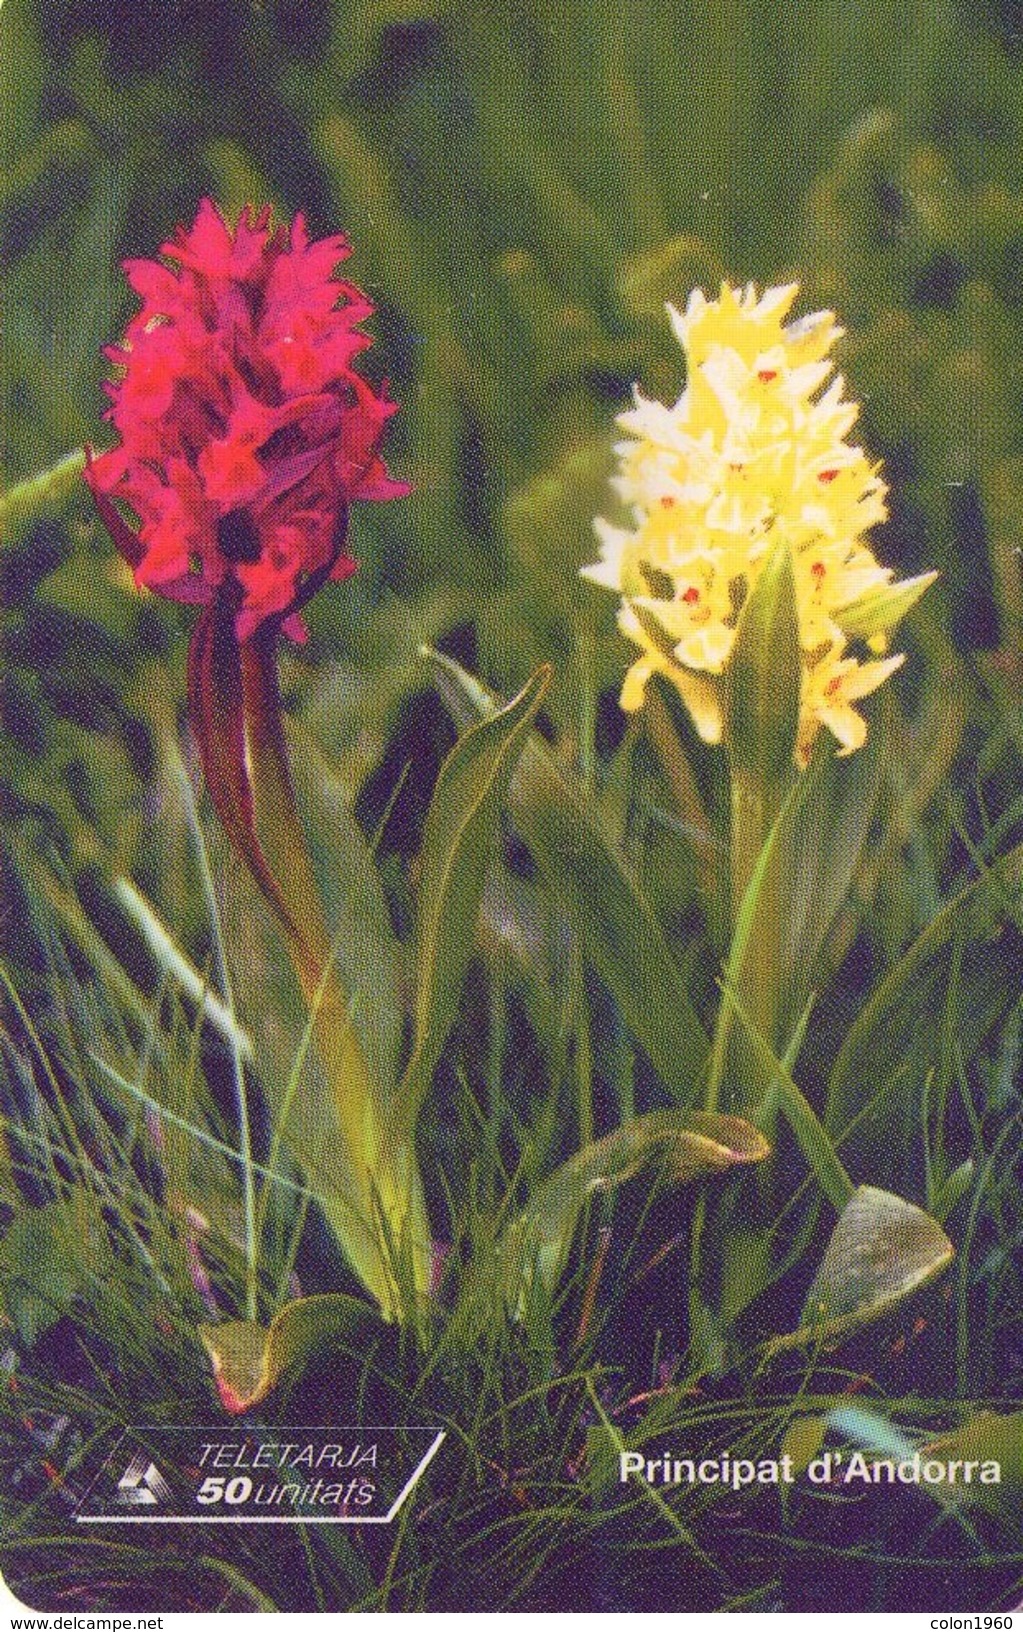 ANDORRA. Orchid - ORQUIDEA. 1999-02. 20000 Ex. AD-STA-0101. (089) - Andorre